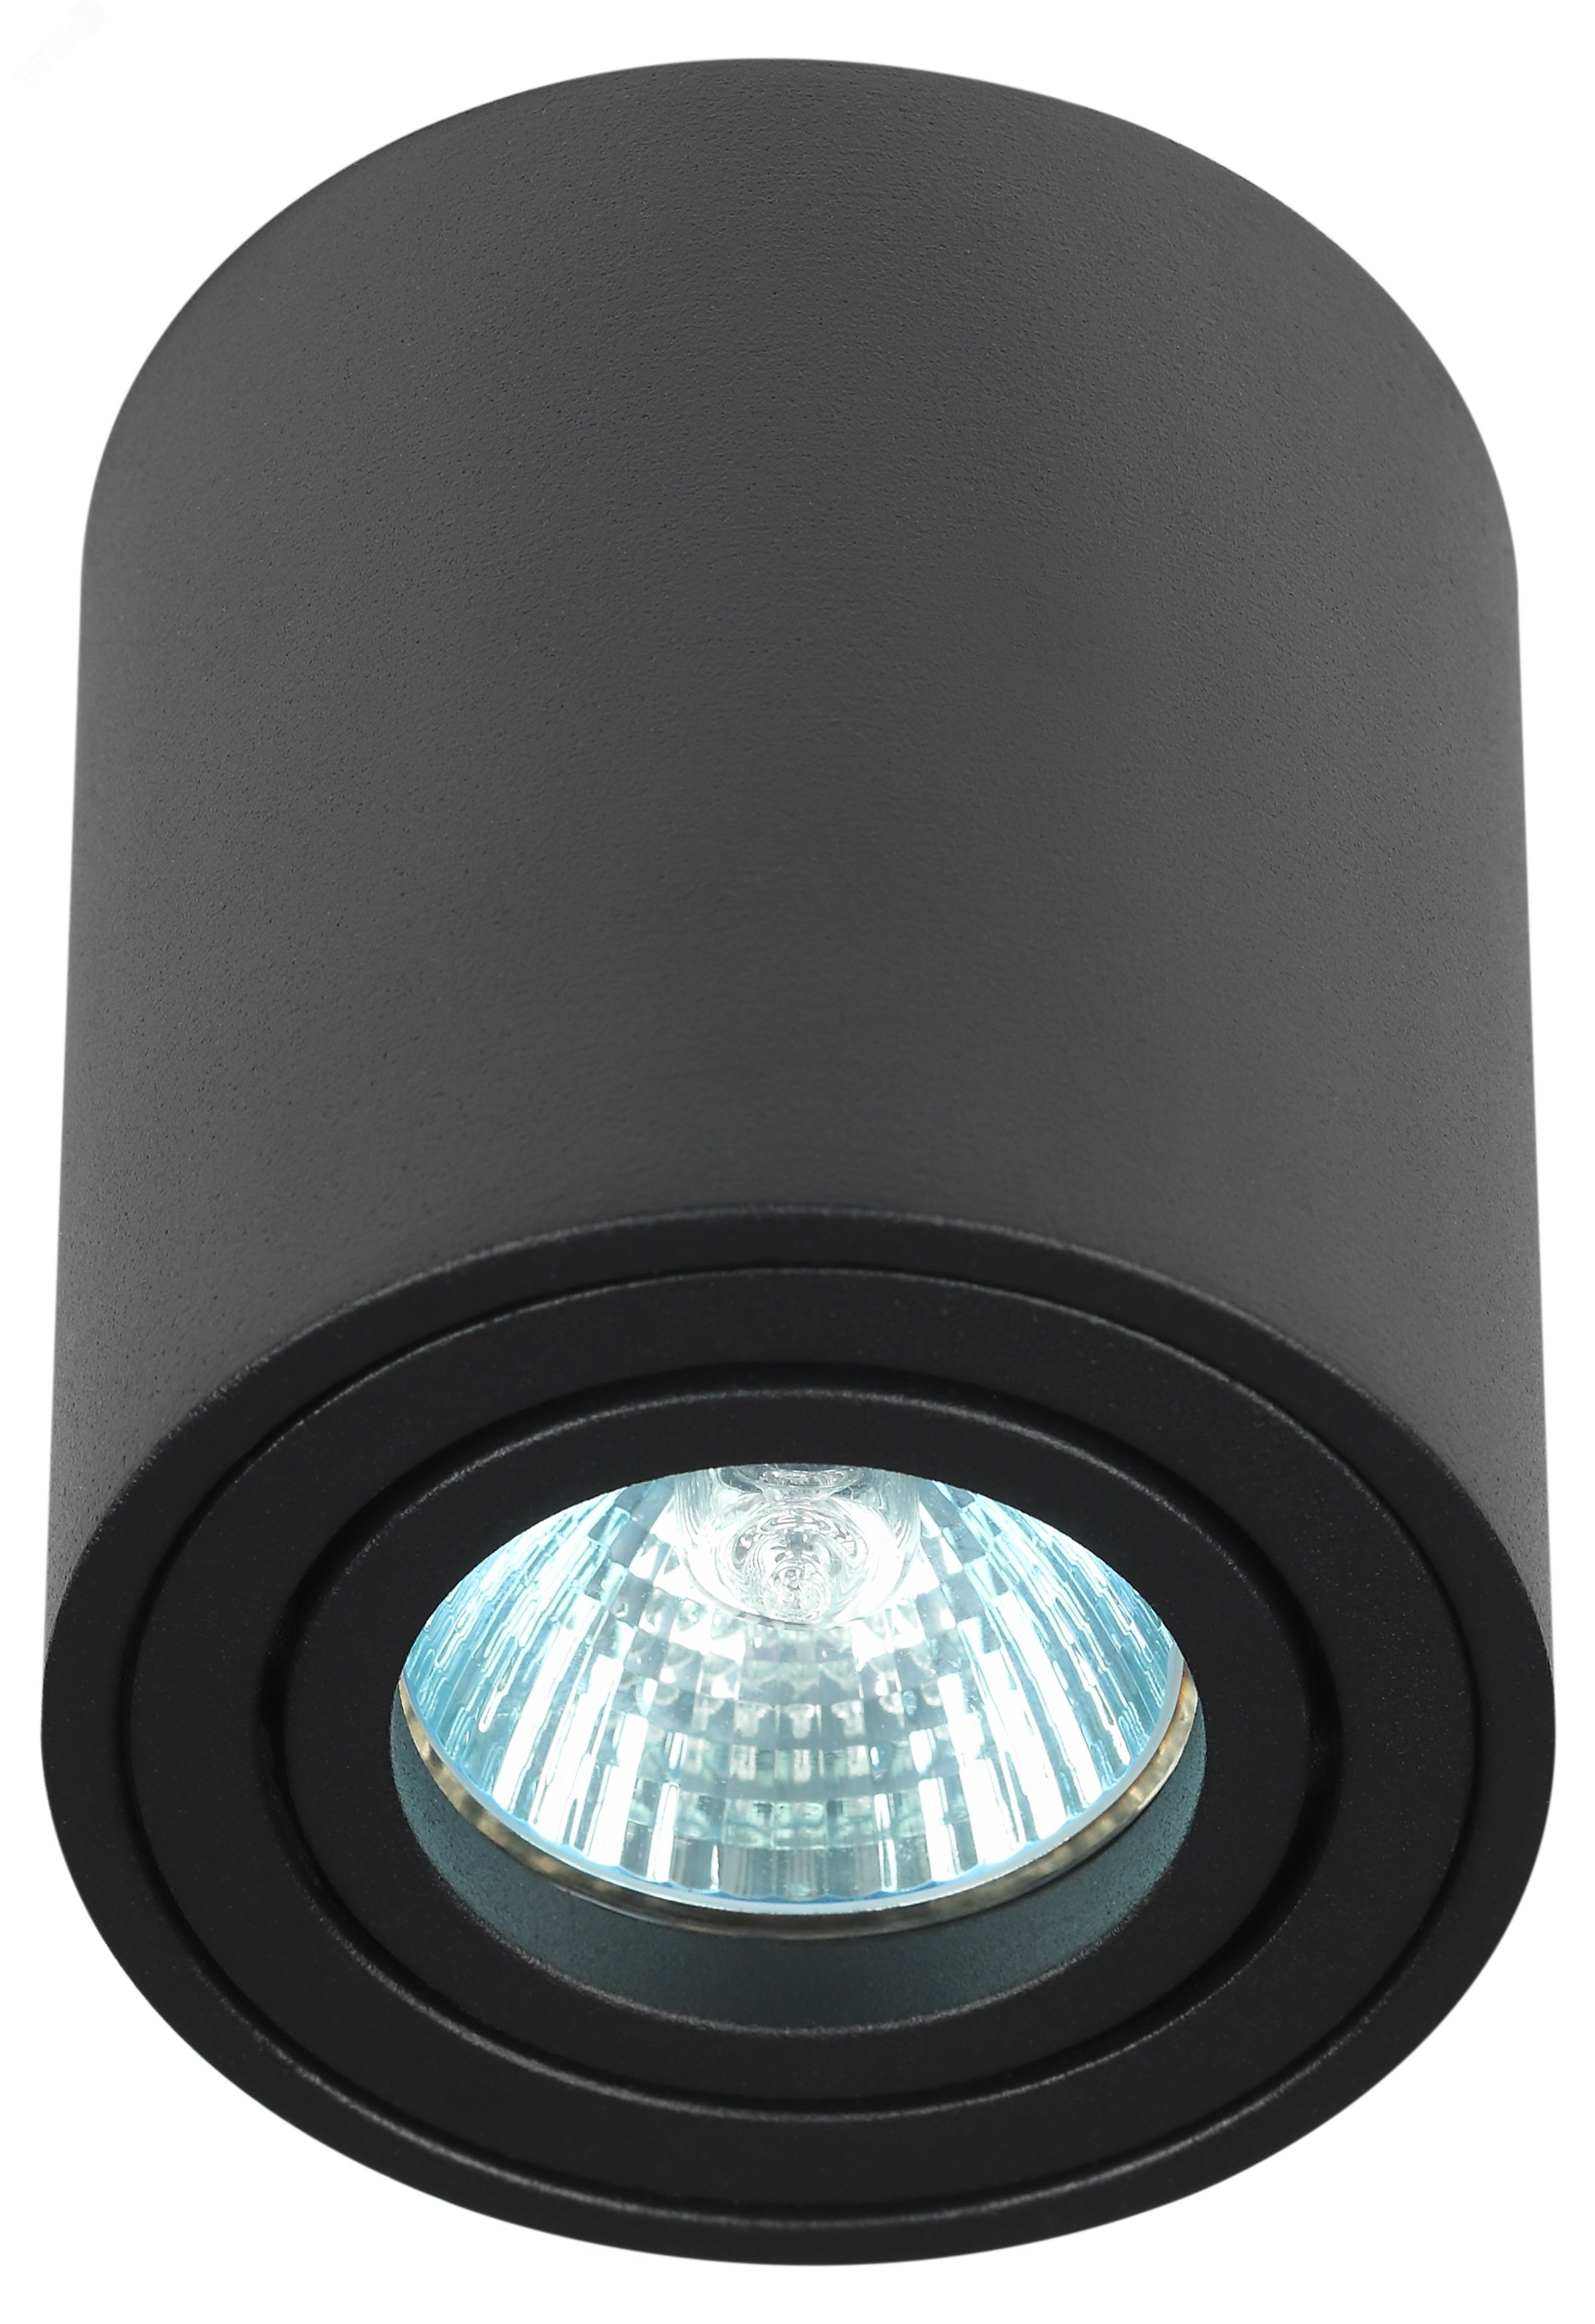 Светильник настенно-потолочный спот OL21 BK MR16/GU10, черный, поворотный лампа MR16 ( в комплект не входит) Б0054393 ЭРА